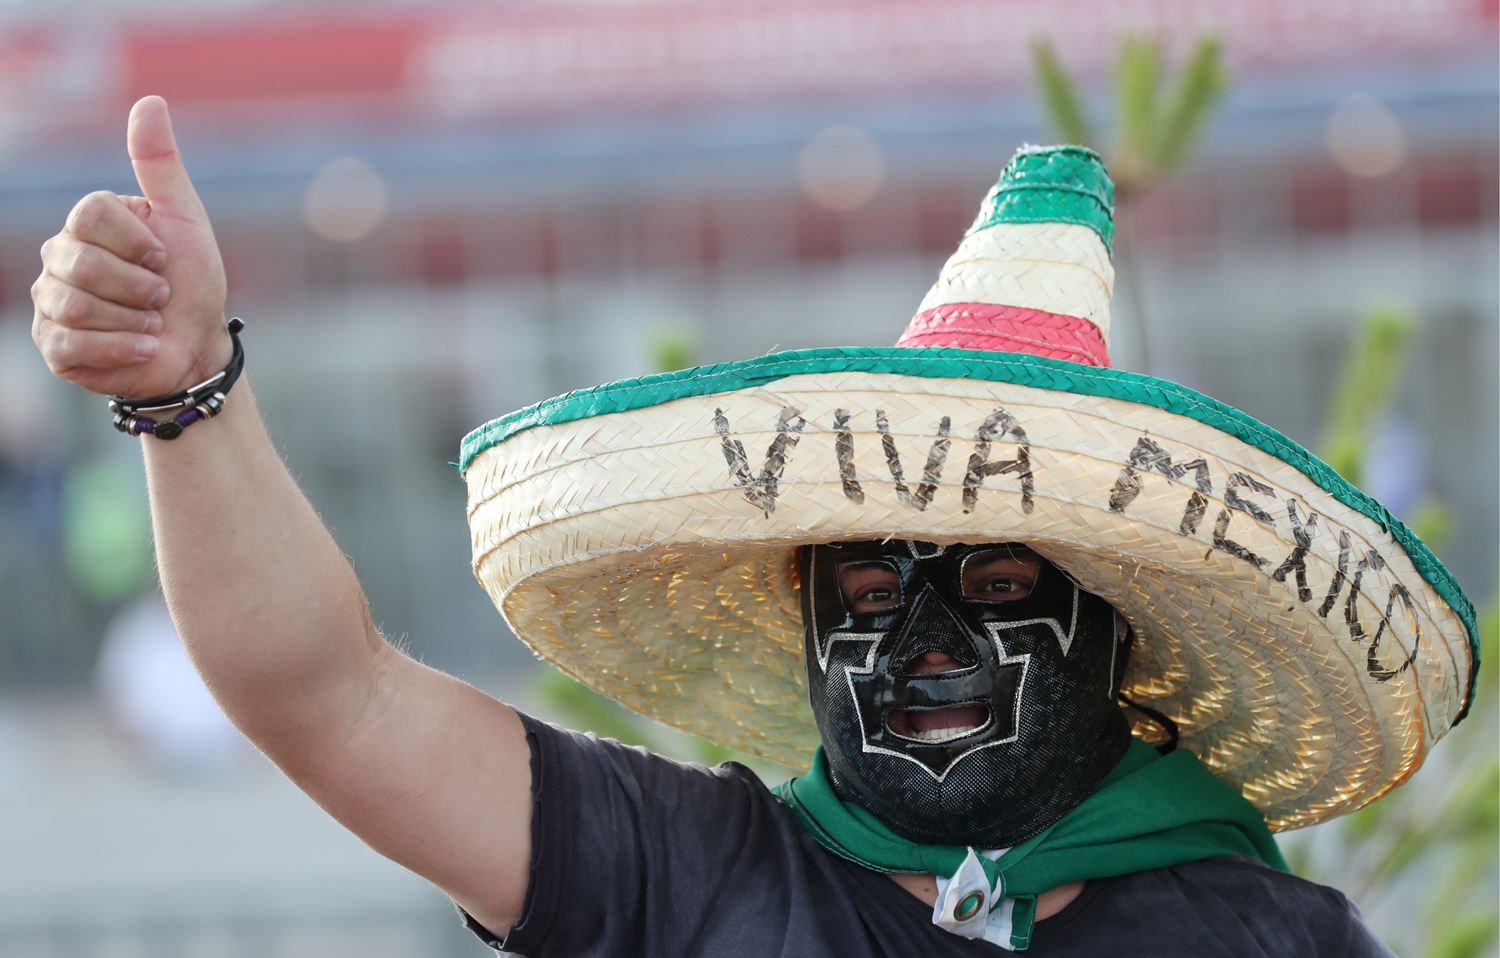 Сомбреро и маска мексиканского рестлера &mdash; традиционный атрибут болельщиков из Мексики